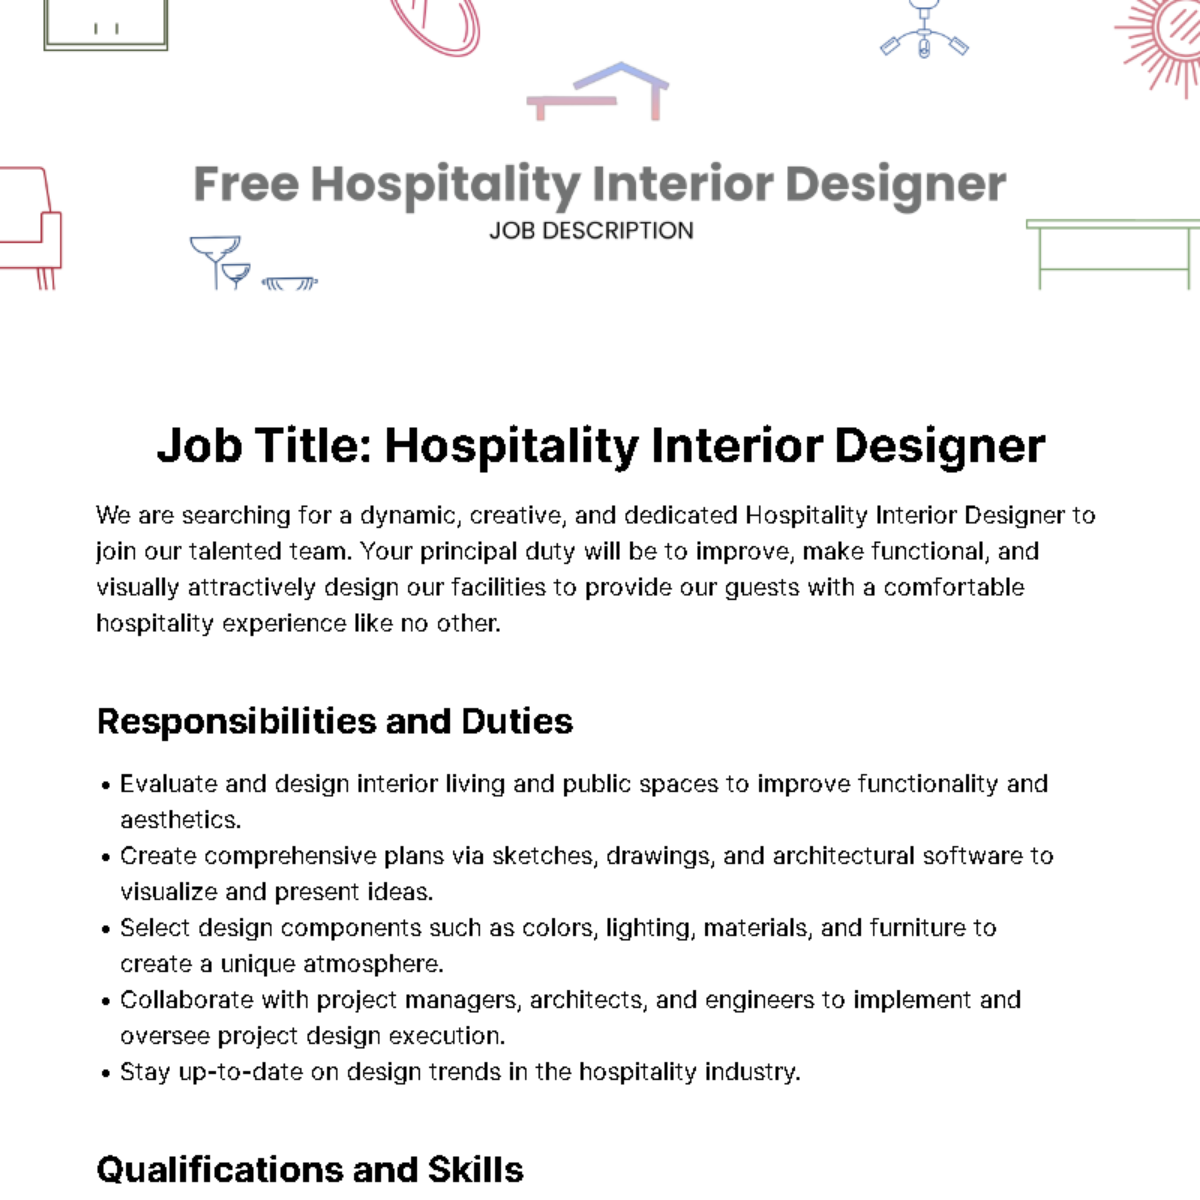 Free Hospitality Interior Designer Job Description Template